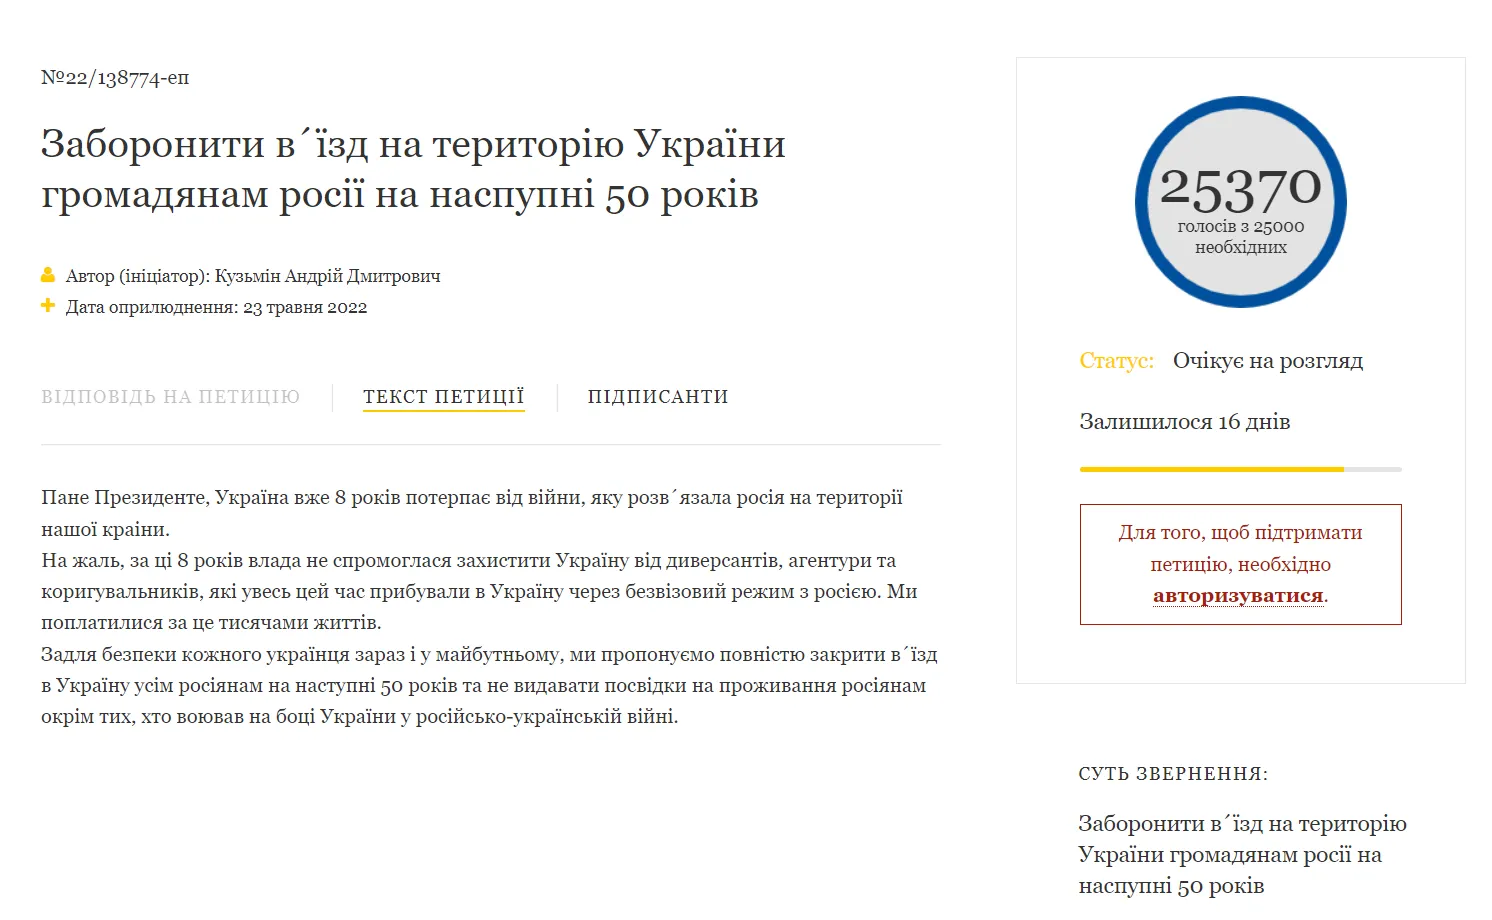 Петиція до Зеленського із закликом заборонити в'їзд росіян на 50 років набрала 25 тис. голосів